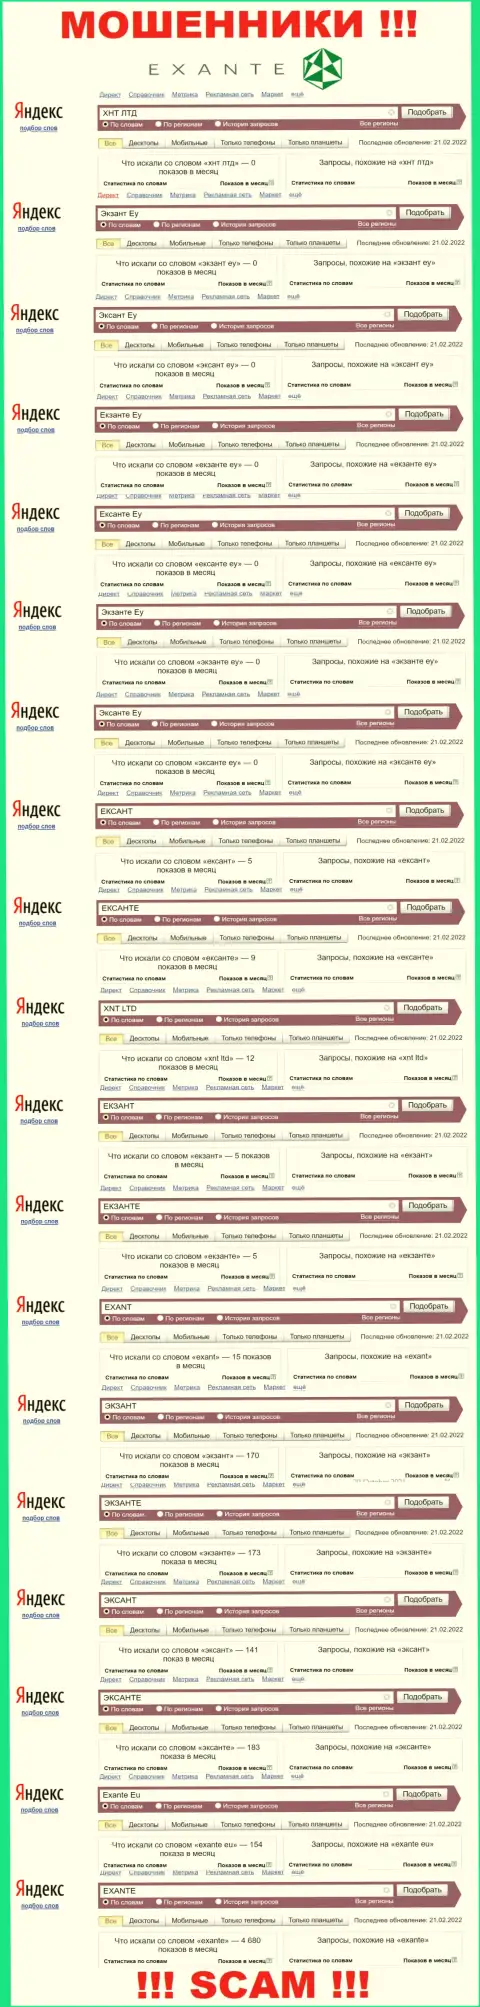 Количество онлайн запросов в поисковиках всемирной интернет паутины по бренду аферистов Экзанте Еу